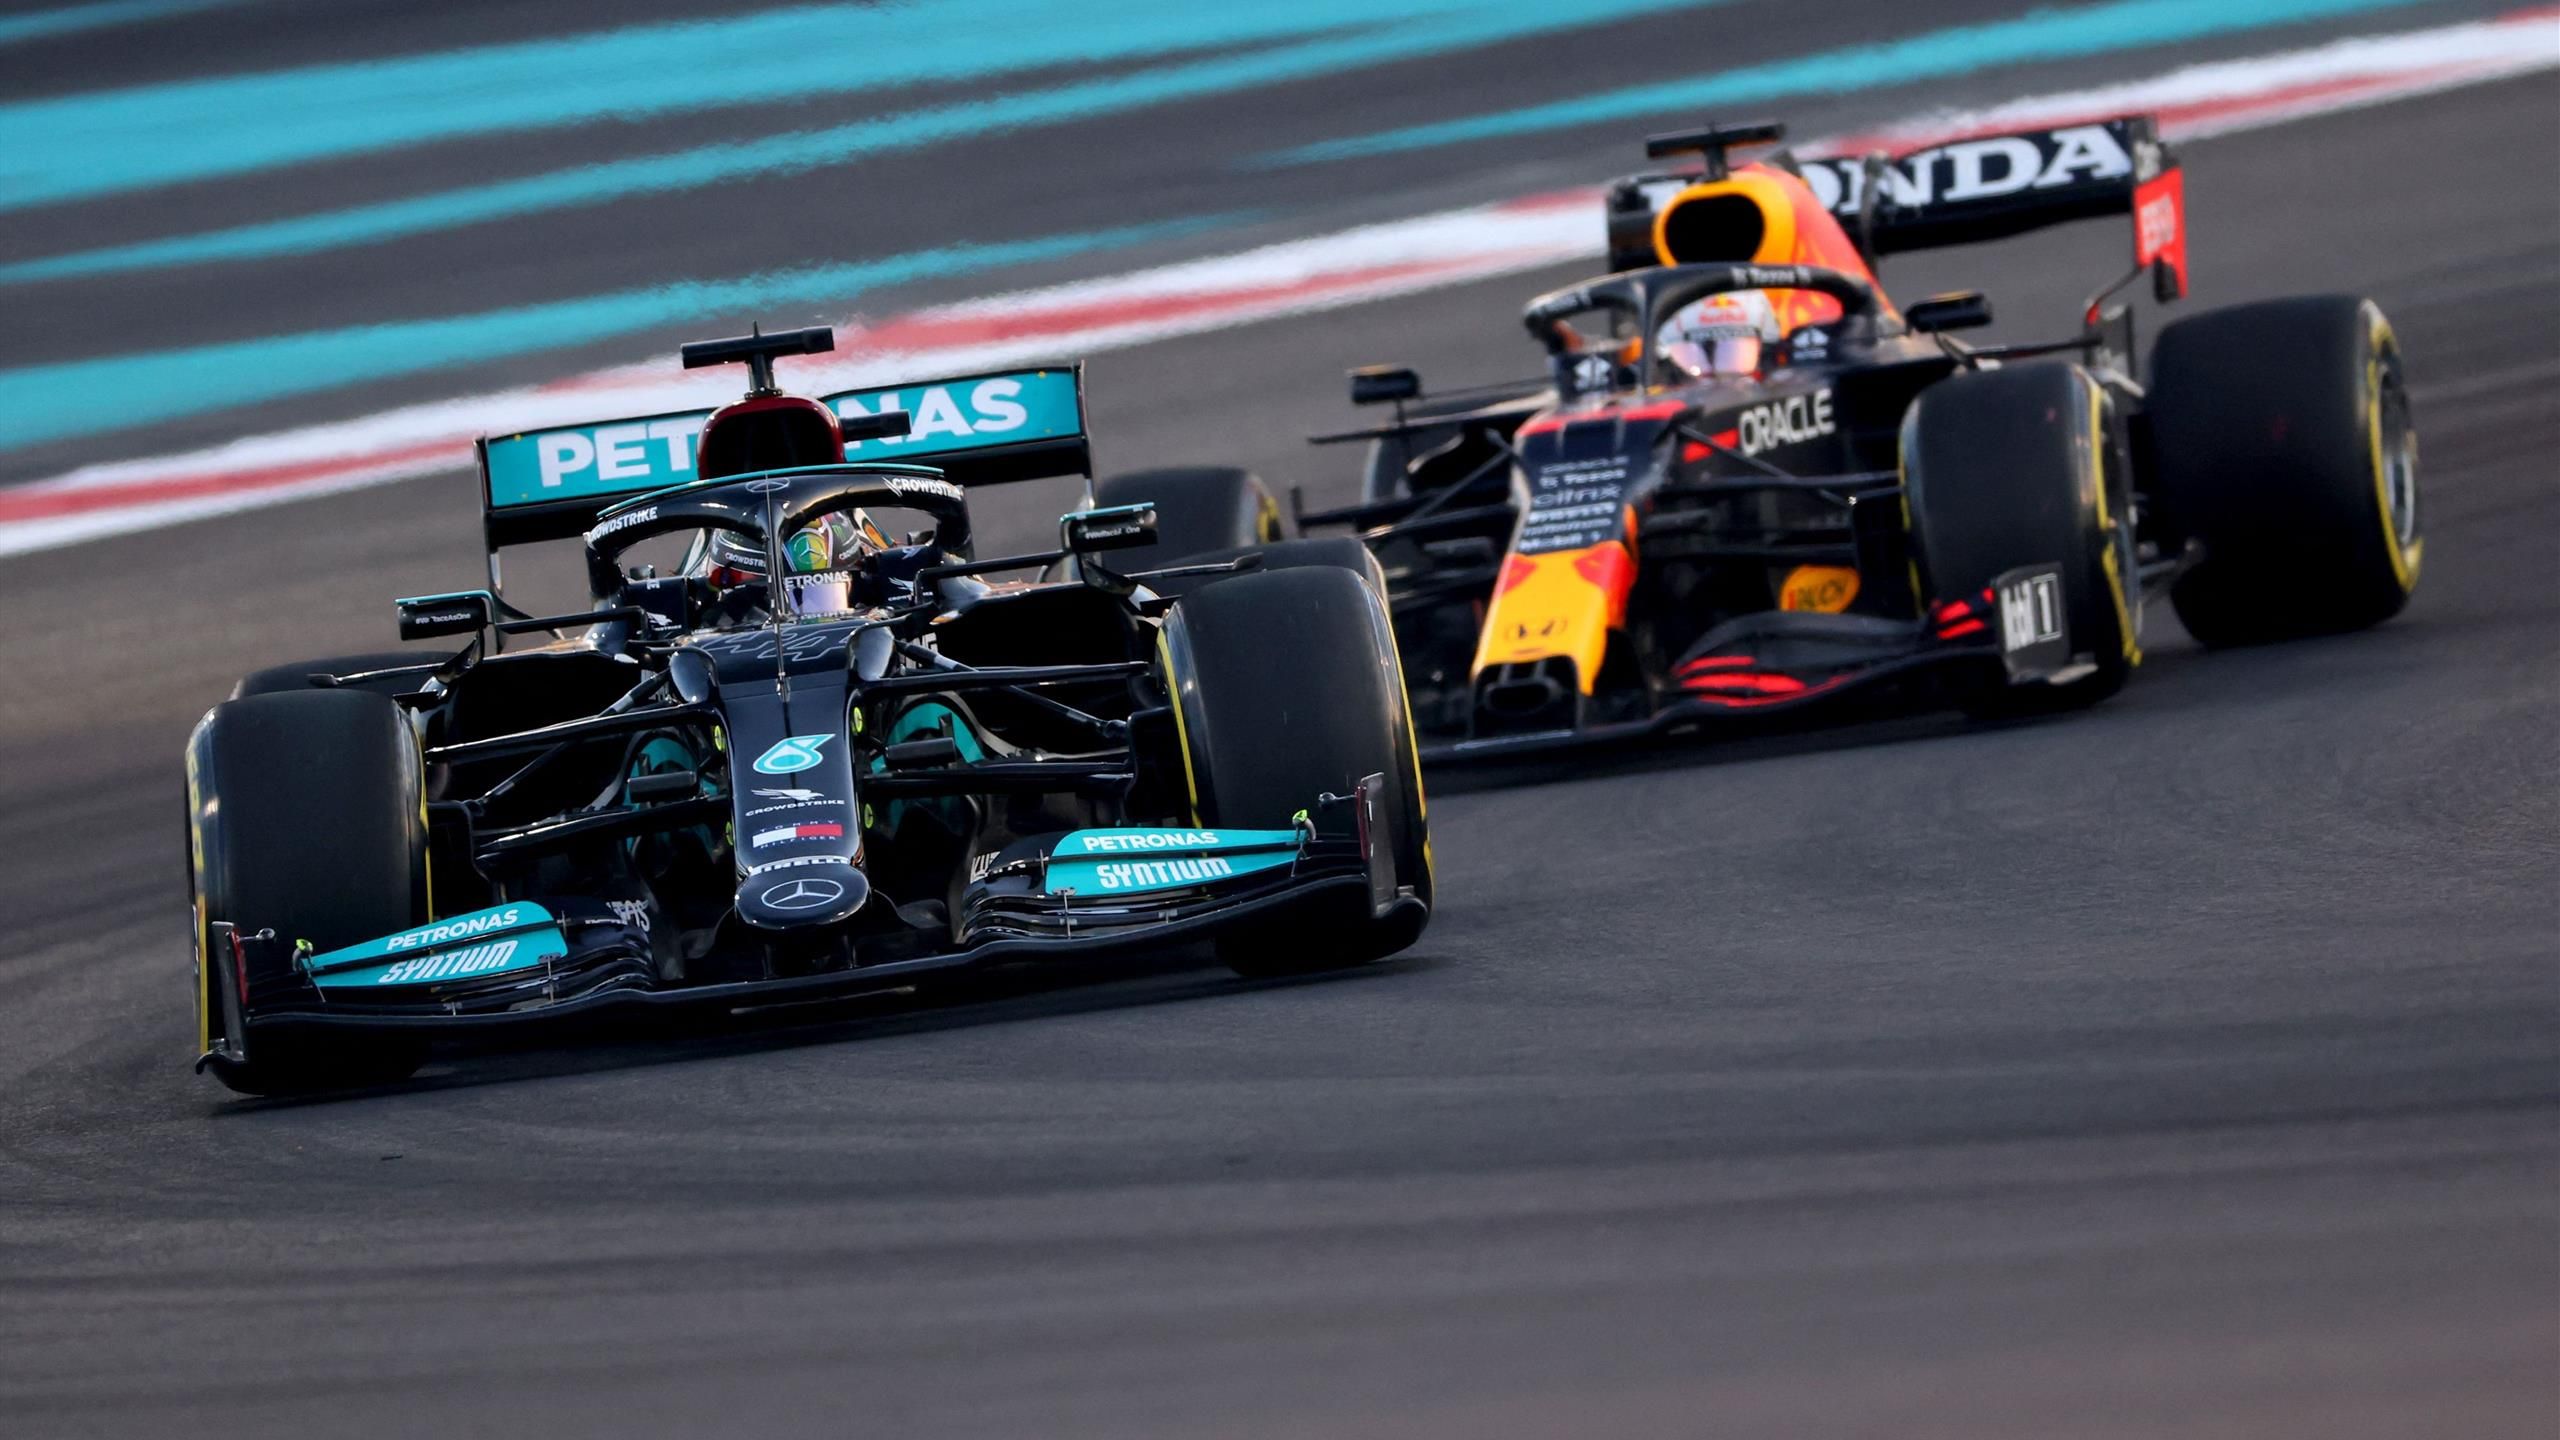 Abu Dhabi GP - Max Verstappen trotz Pole Position im Nachteil? Mercedes bei Reifenwahl wohl vorne